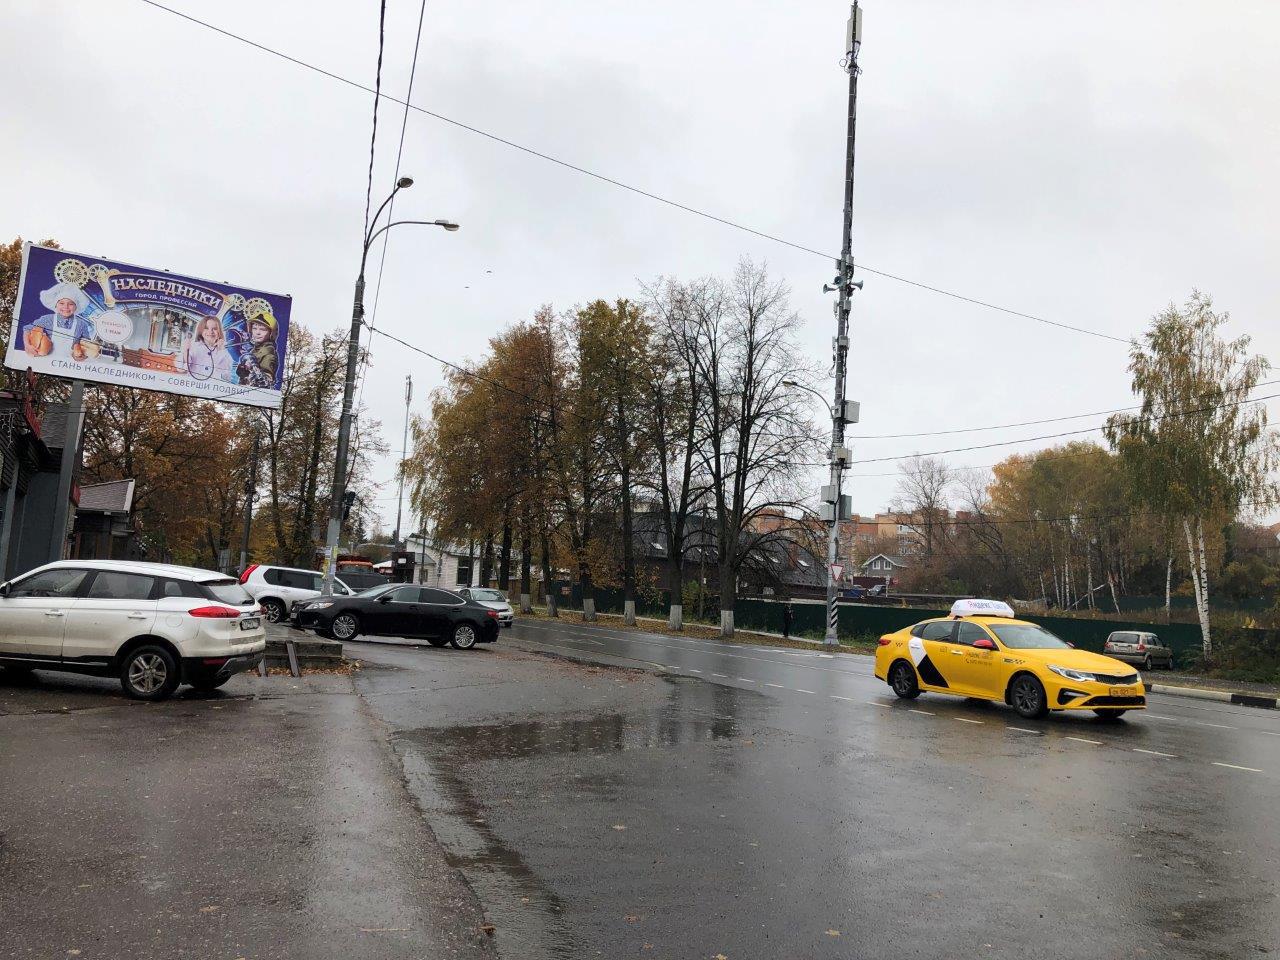 Ильинское шоссе в Глухово и виднеющиеся многоэтажки ЖК Рублевское предместье